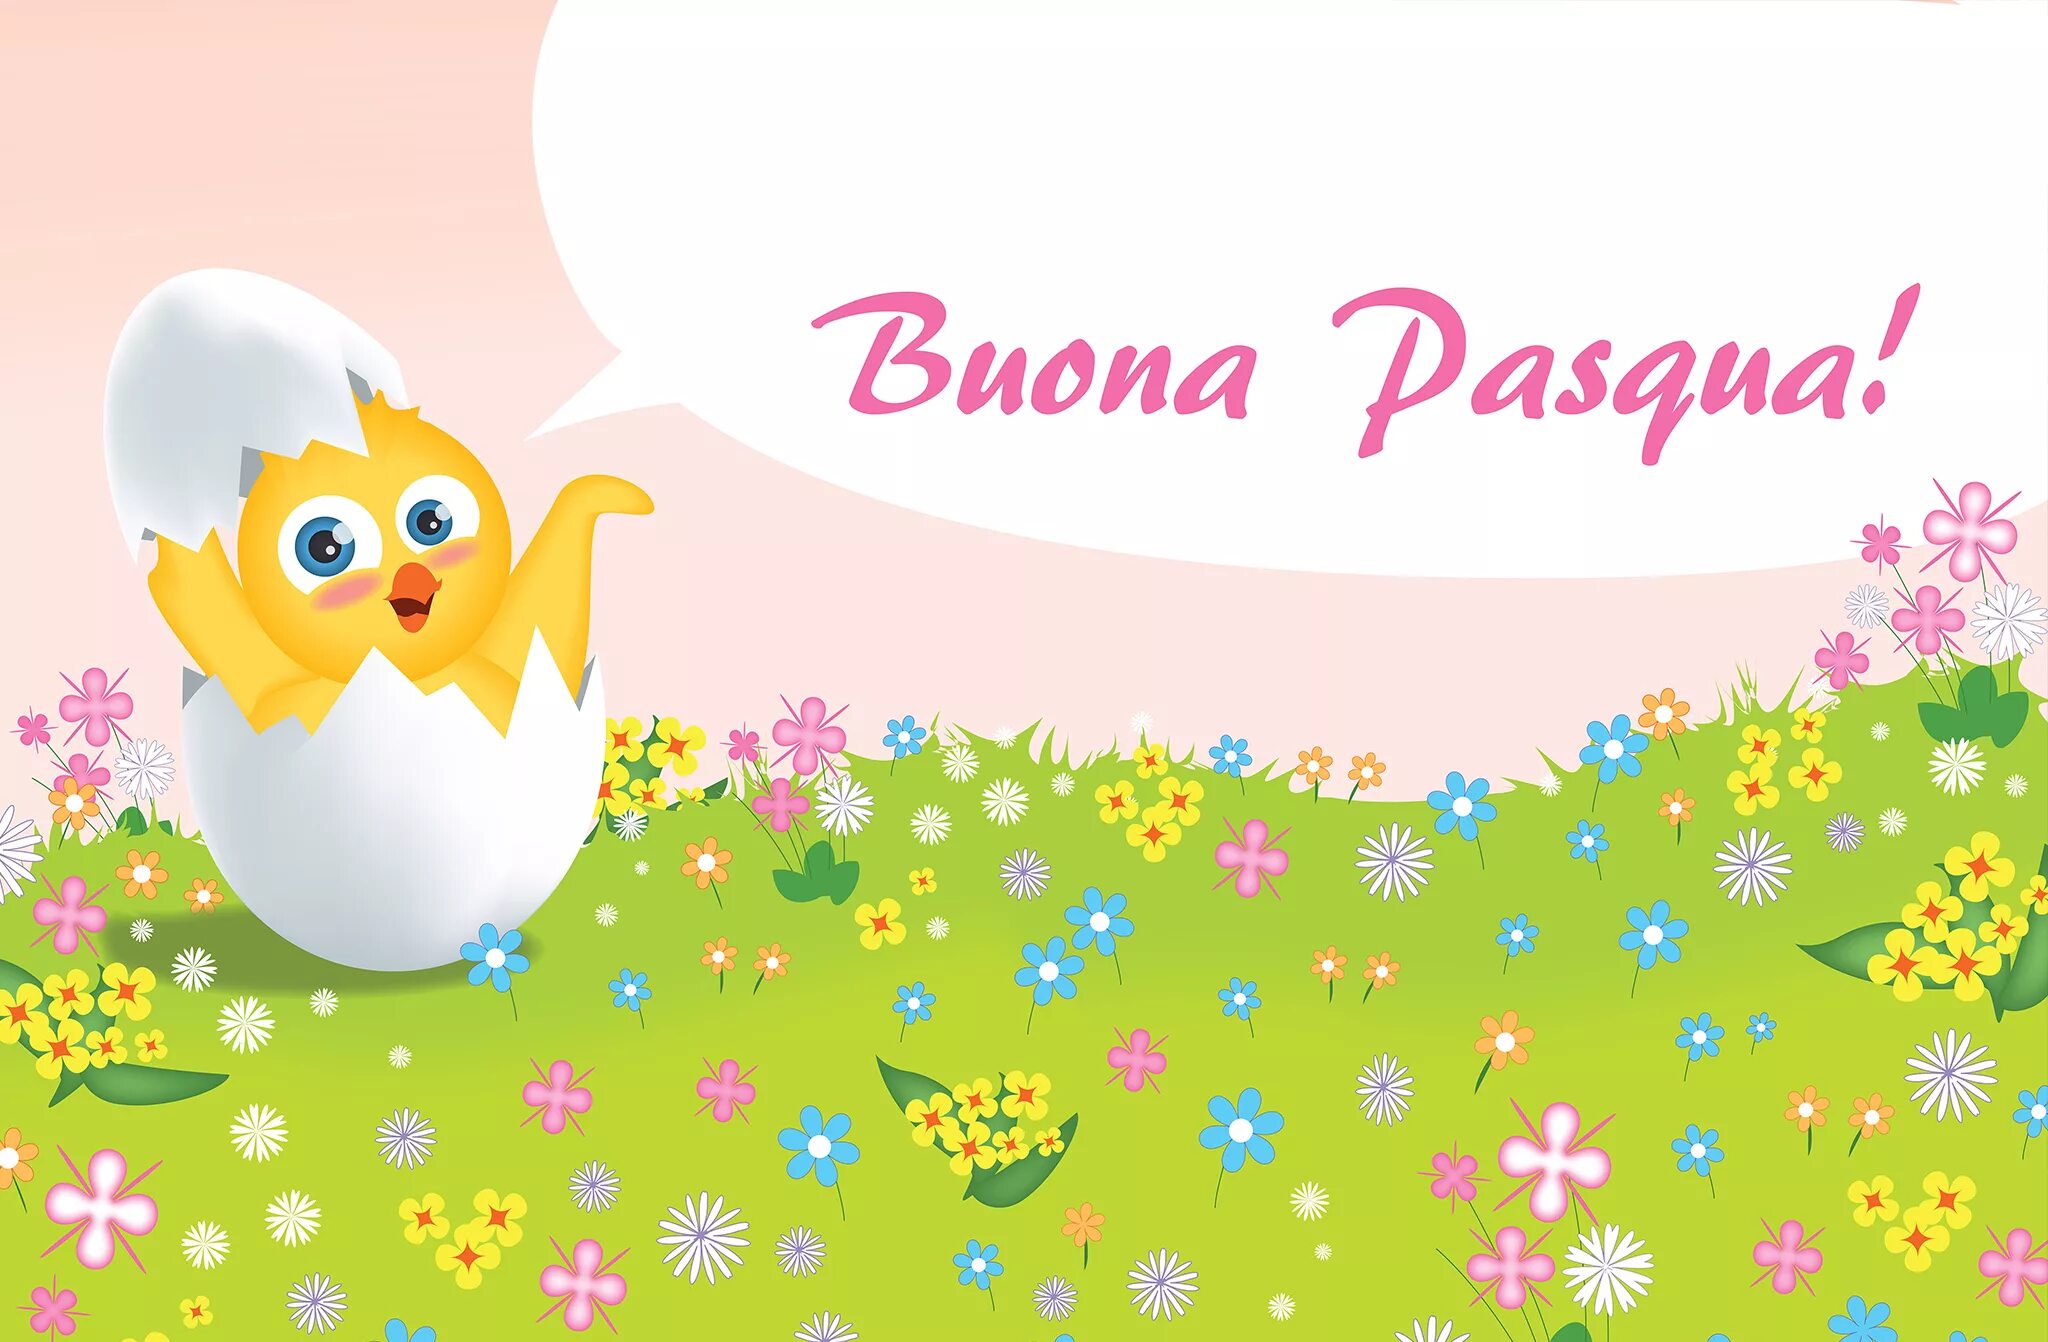 Buona Pasqua картинки. Buona Pasqua на итальянском. Buona Pasqua открытки. Открытка auguri buona Pasqua.